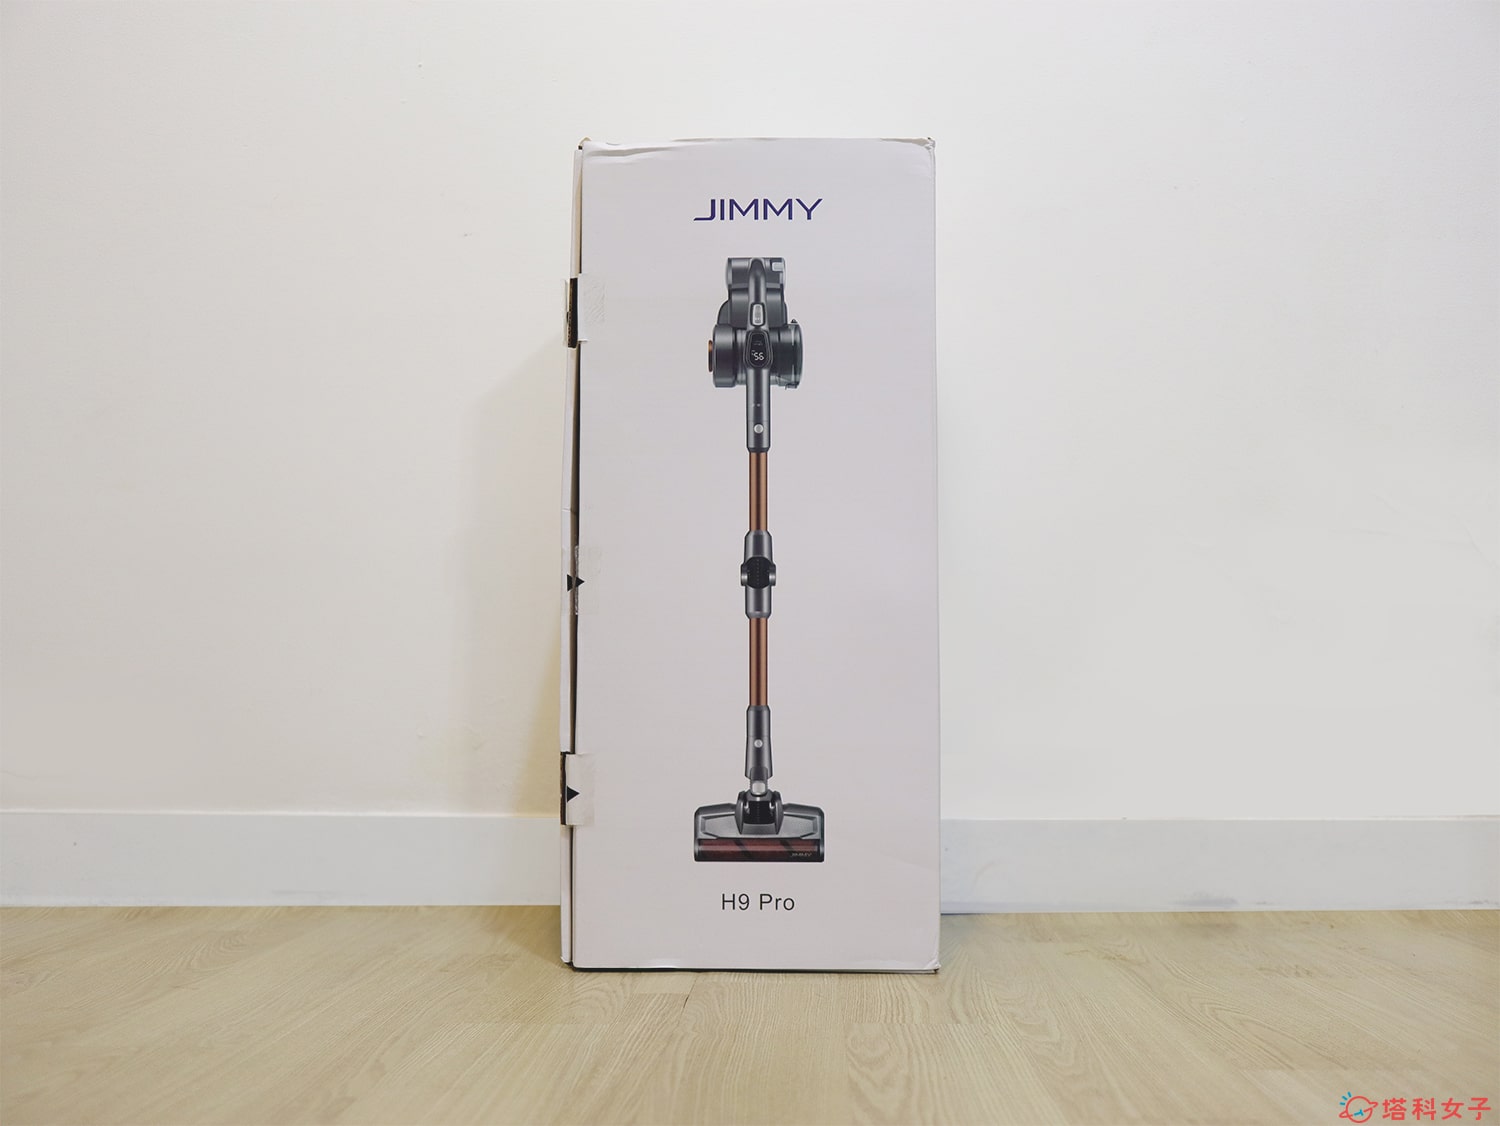 JIMMY H9 Pro 無線吸塵器開箱